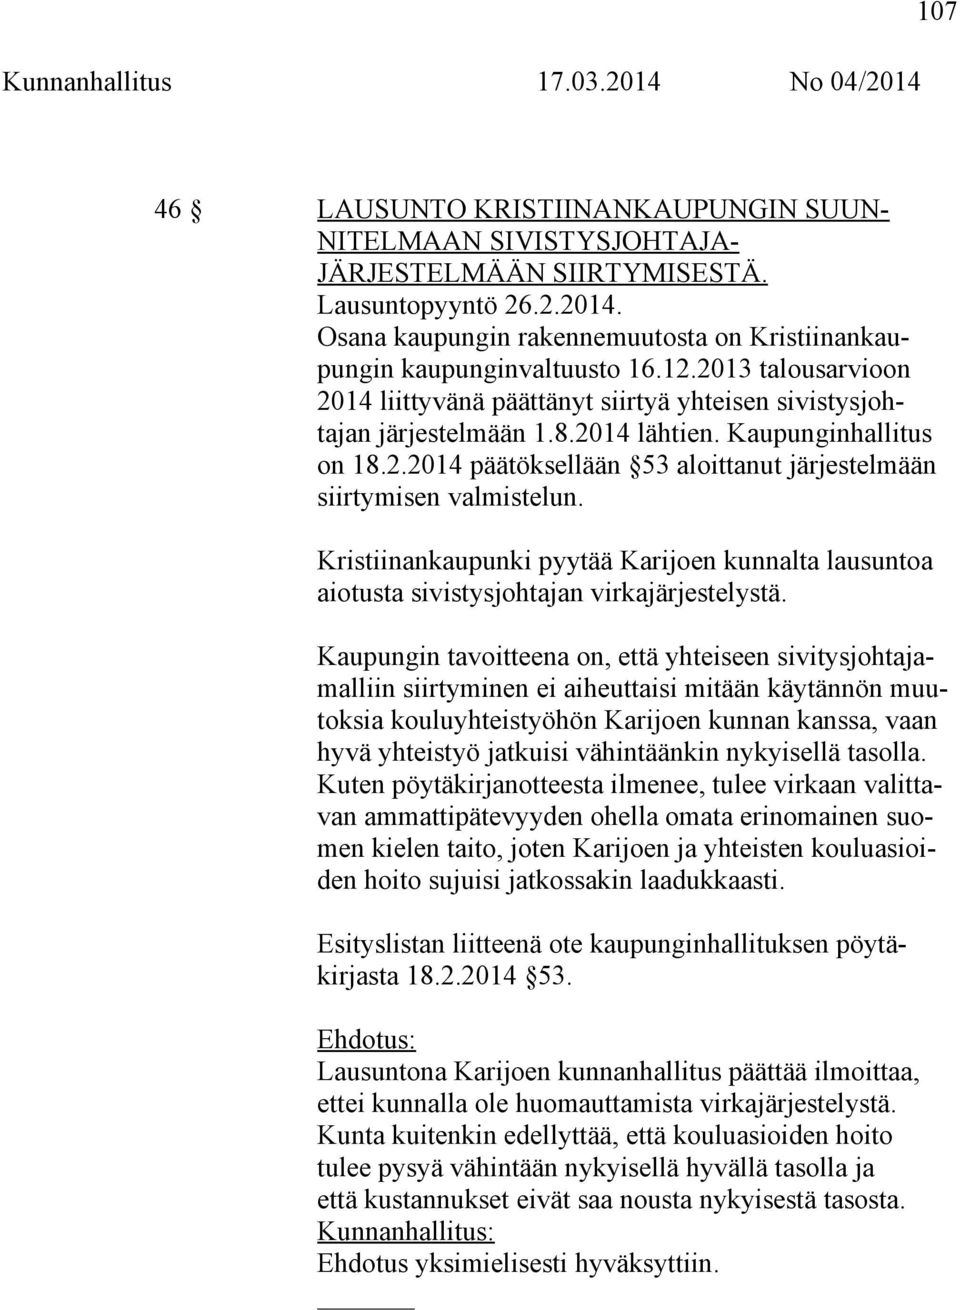 Kristiinankaupunki pyytää Karijoen kunnalta lausuntoa aiotusta sivistysjohtajan virkajärjestelystä.